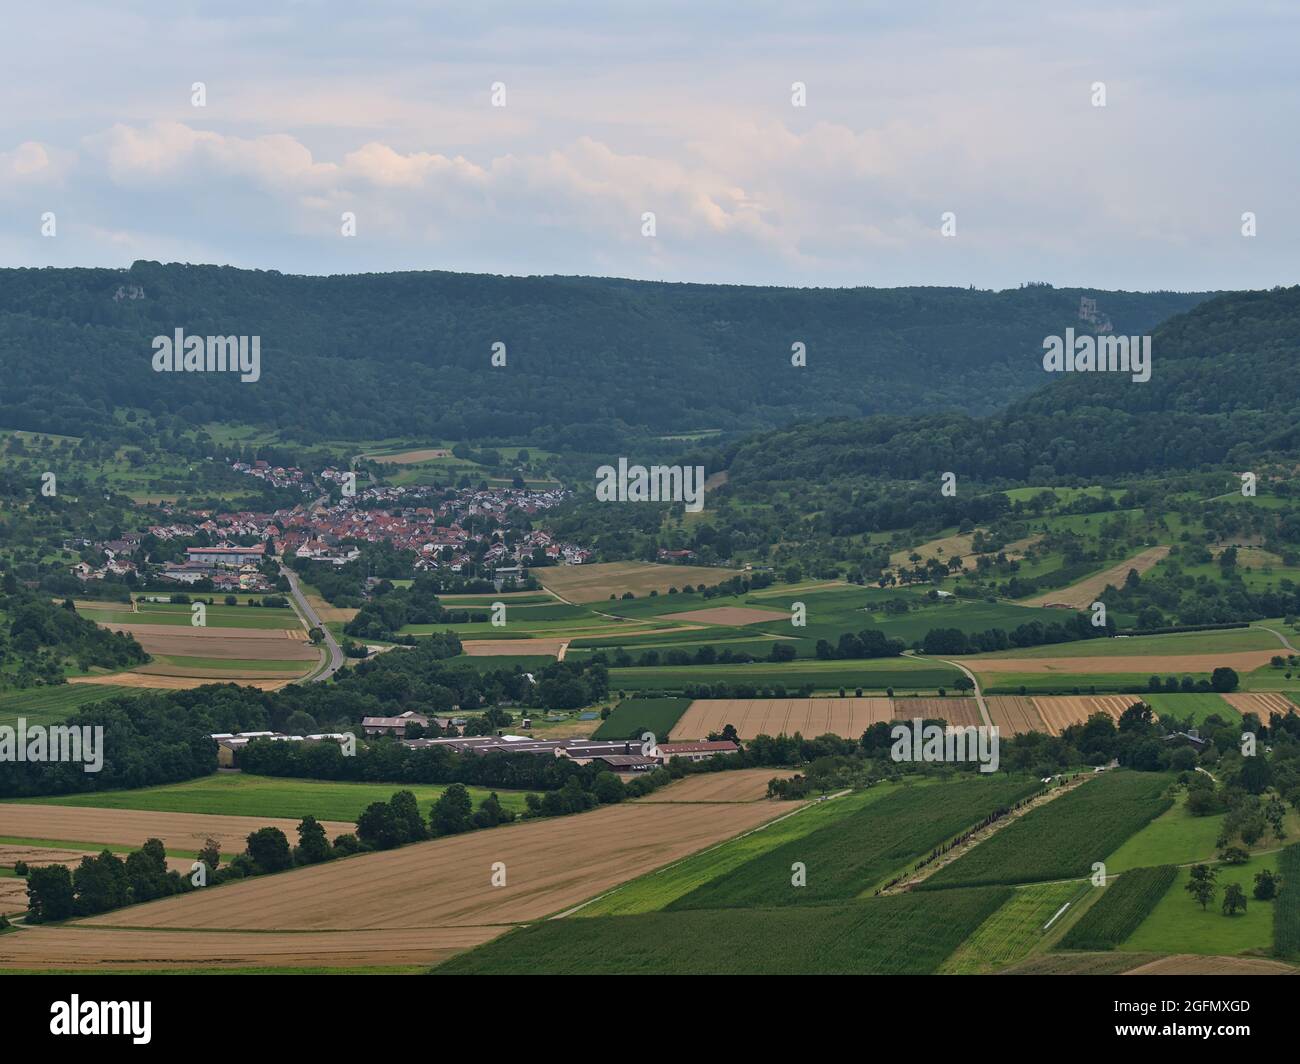 Blick auf die nördlichen Ausläufer der Schwäbischen Alb mit Wäldern, landwirtschaftlichen Feldern, ländliches Dorf Hepsisau, Teil von Weilheim an der Teck, Deutschland. Stockfoto